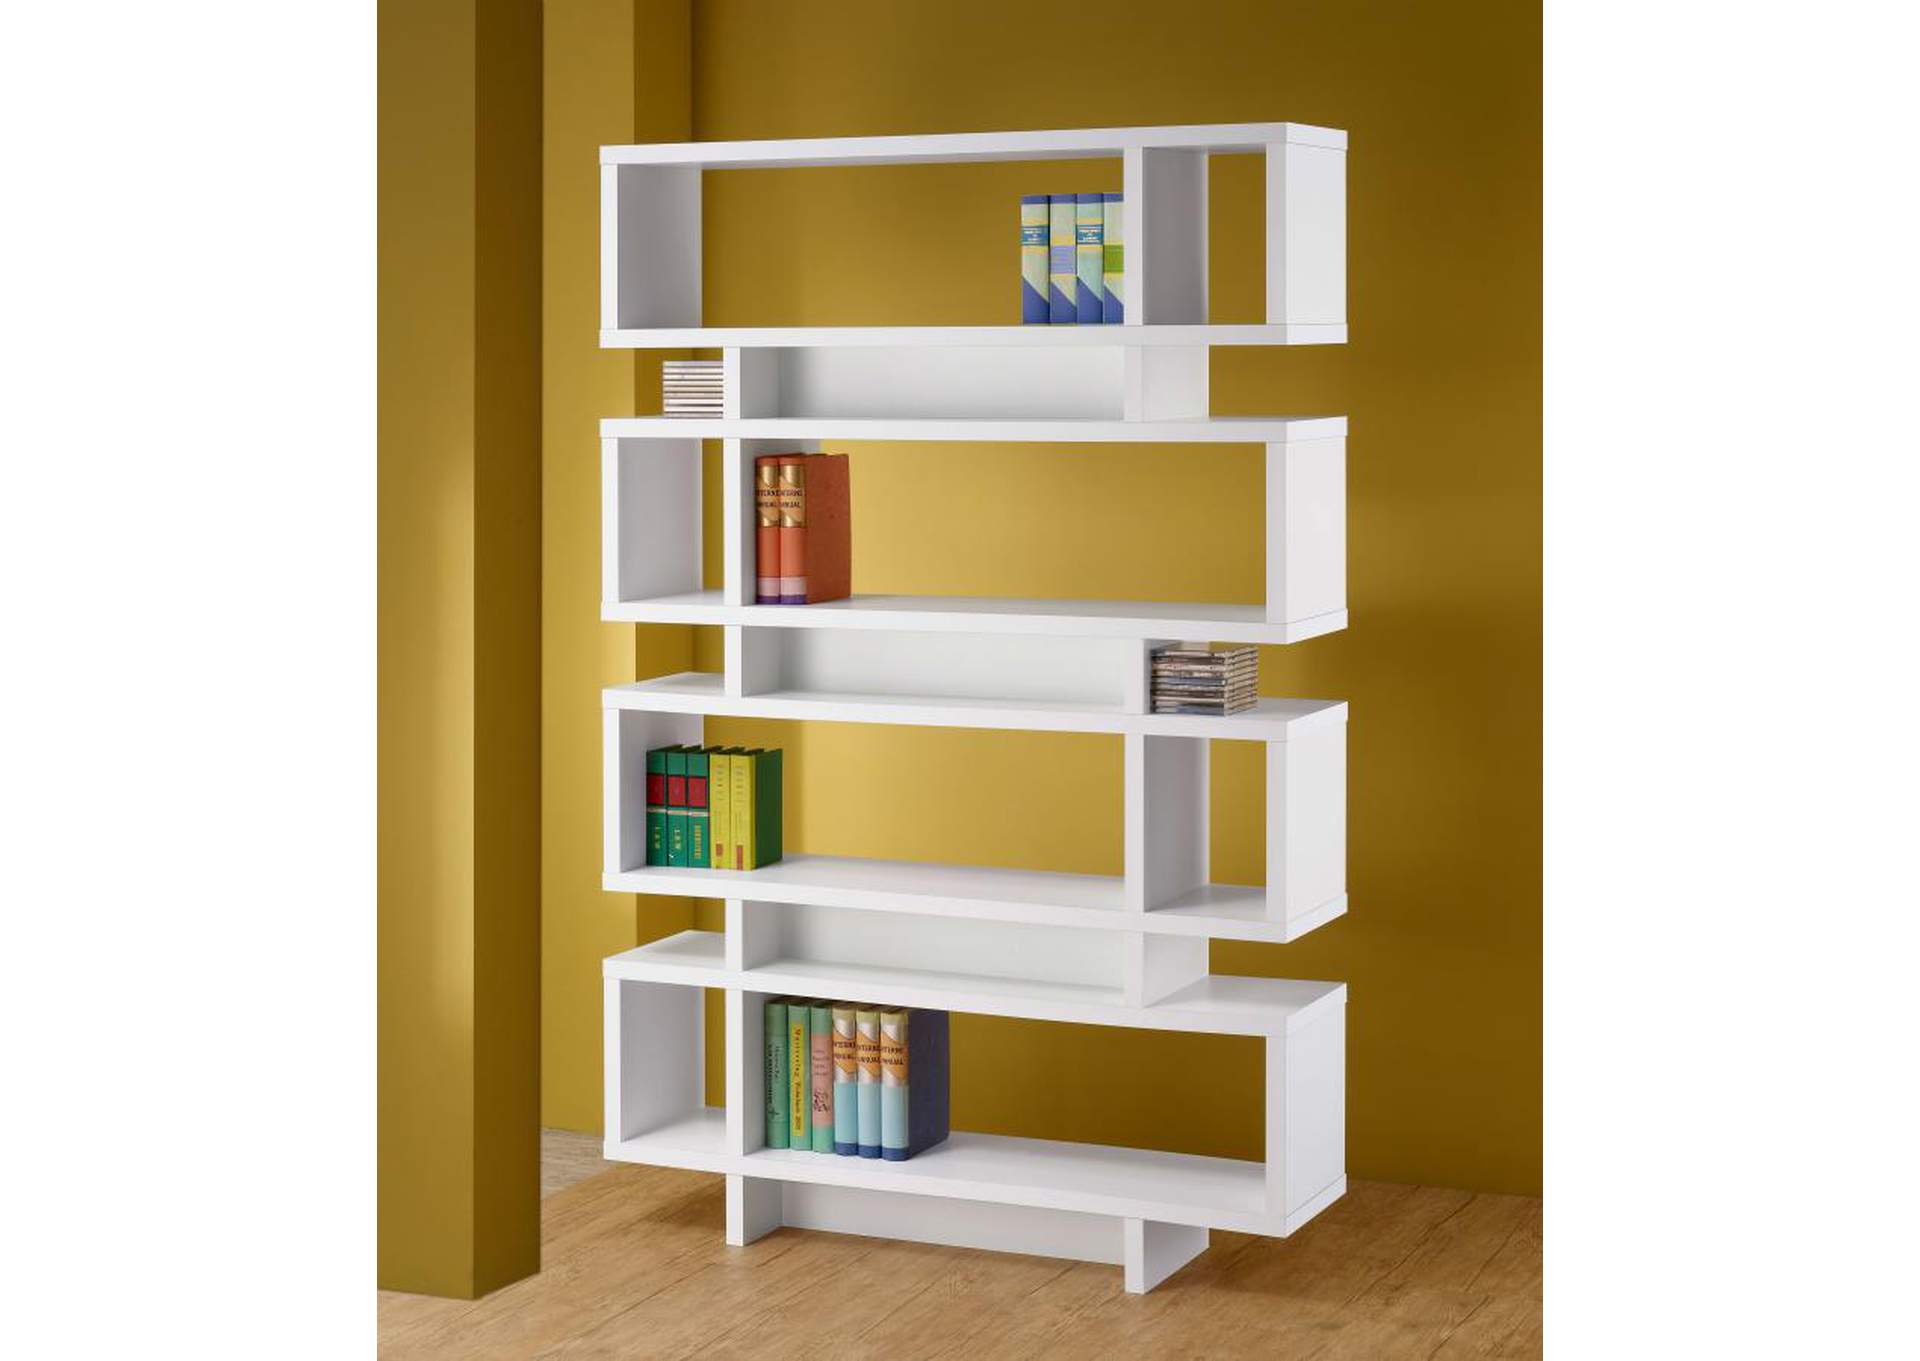 Reid 4 - tier Open Back Bookcase White,Coaster Furniture